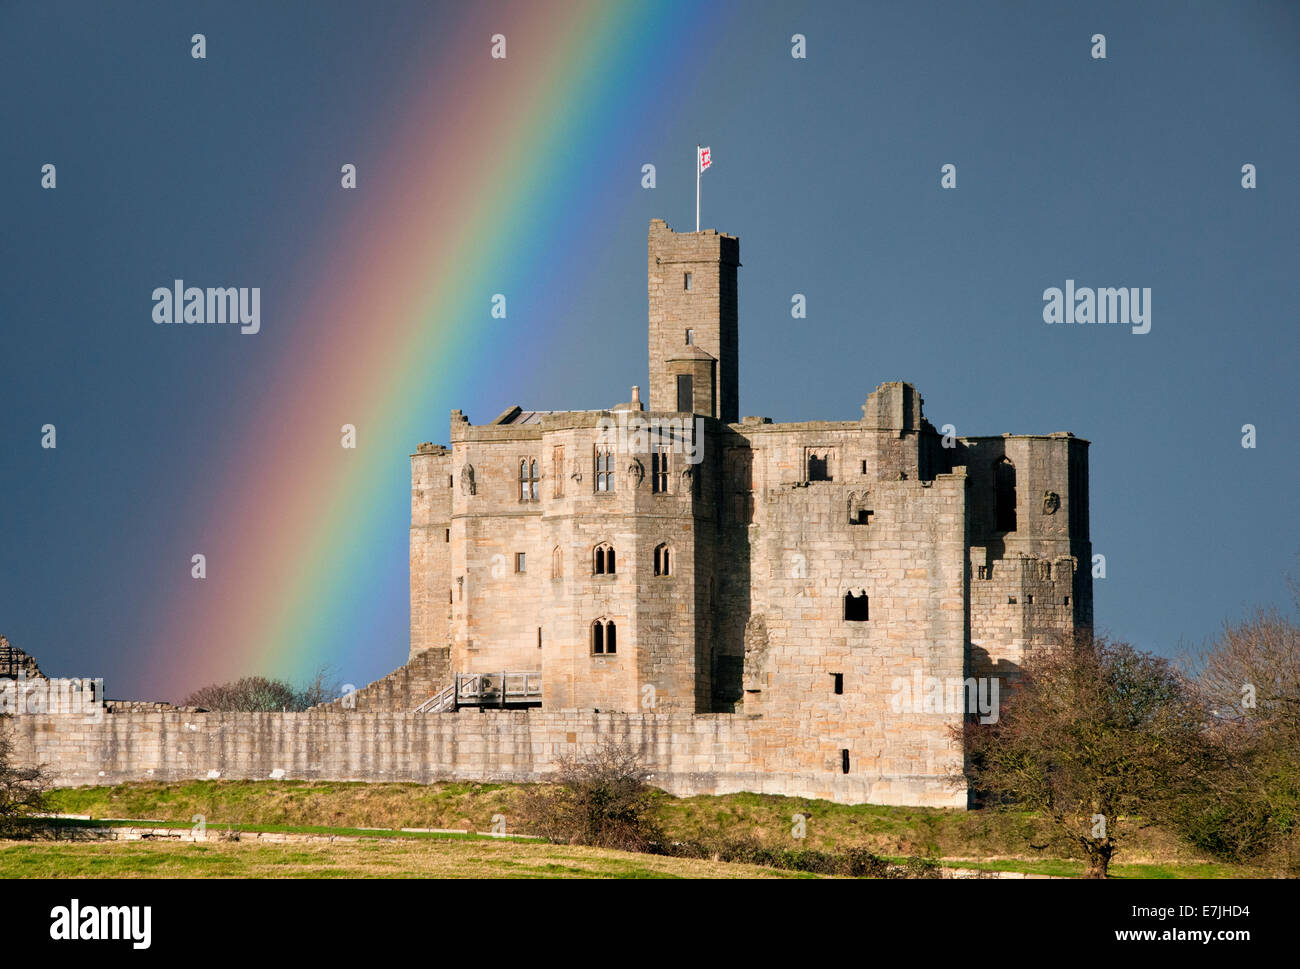 Rainbow Over Warkworth Castle, Warkworth, Northumberland, England, UK Stock Photo